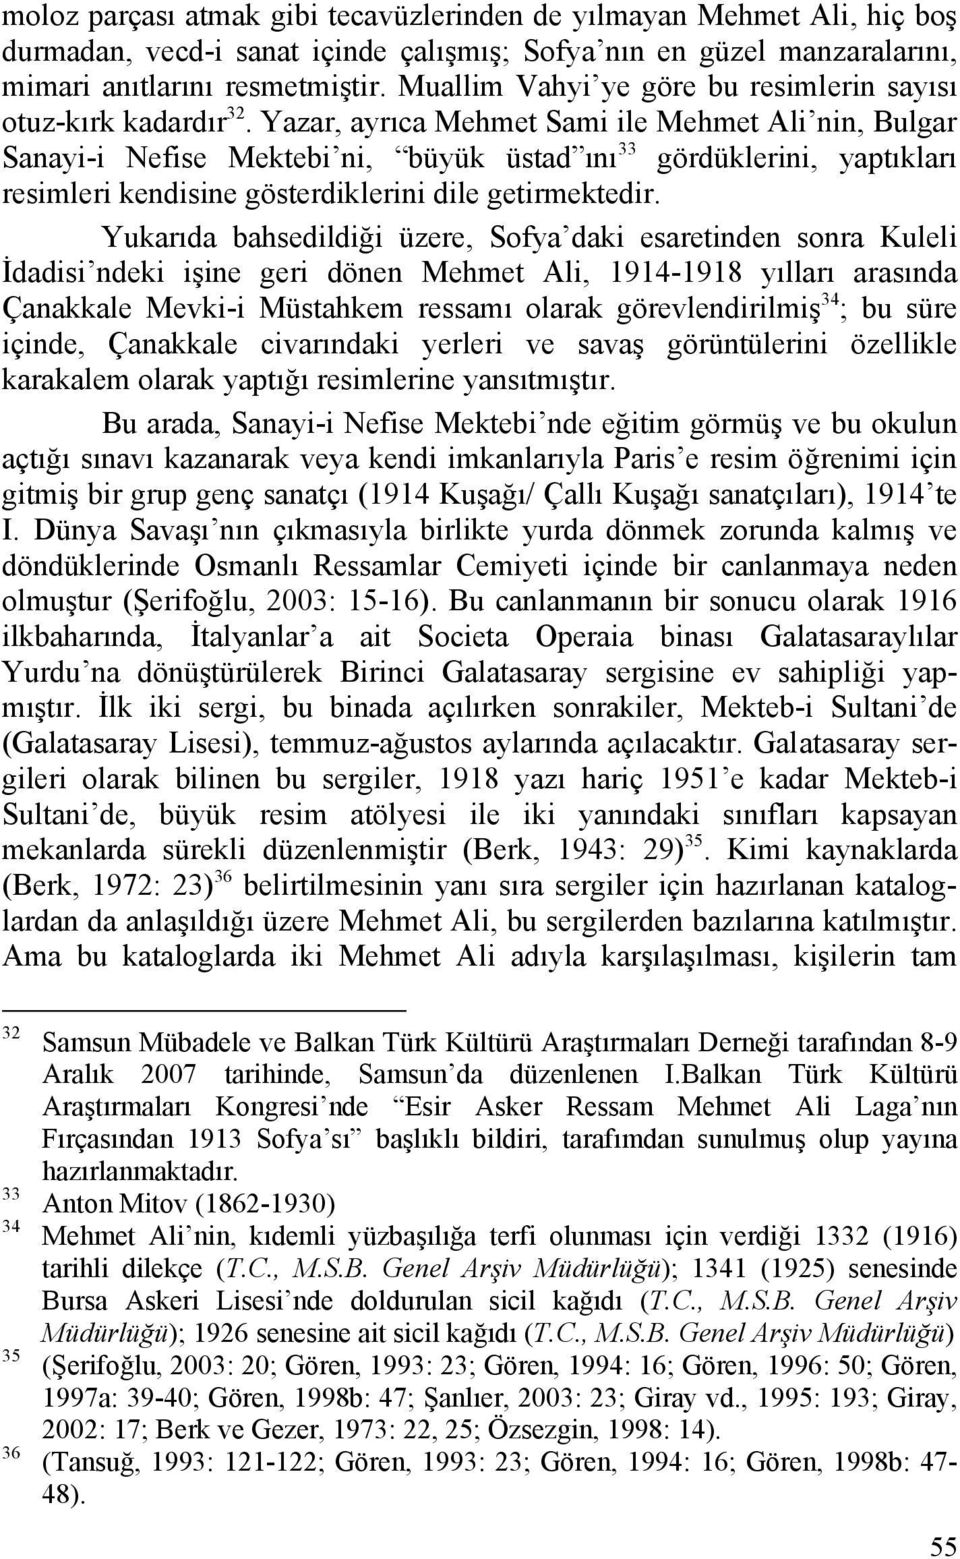 Yazar, ayrıca Mehmet Sami ile Mehmet Ali nin, Bulgar Sanayi-i Nefise Mektebi ni, büyük üstad ını 33 gördüklerini, yaptıkları resimleri kendisine gösterdiklerini dile getirmektedir.